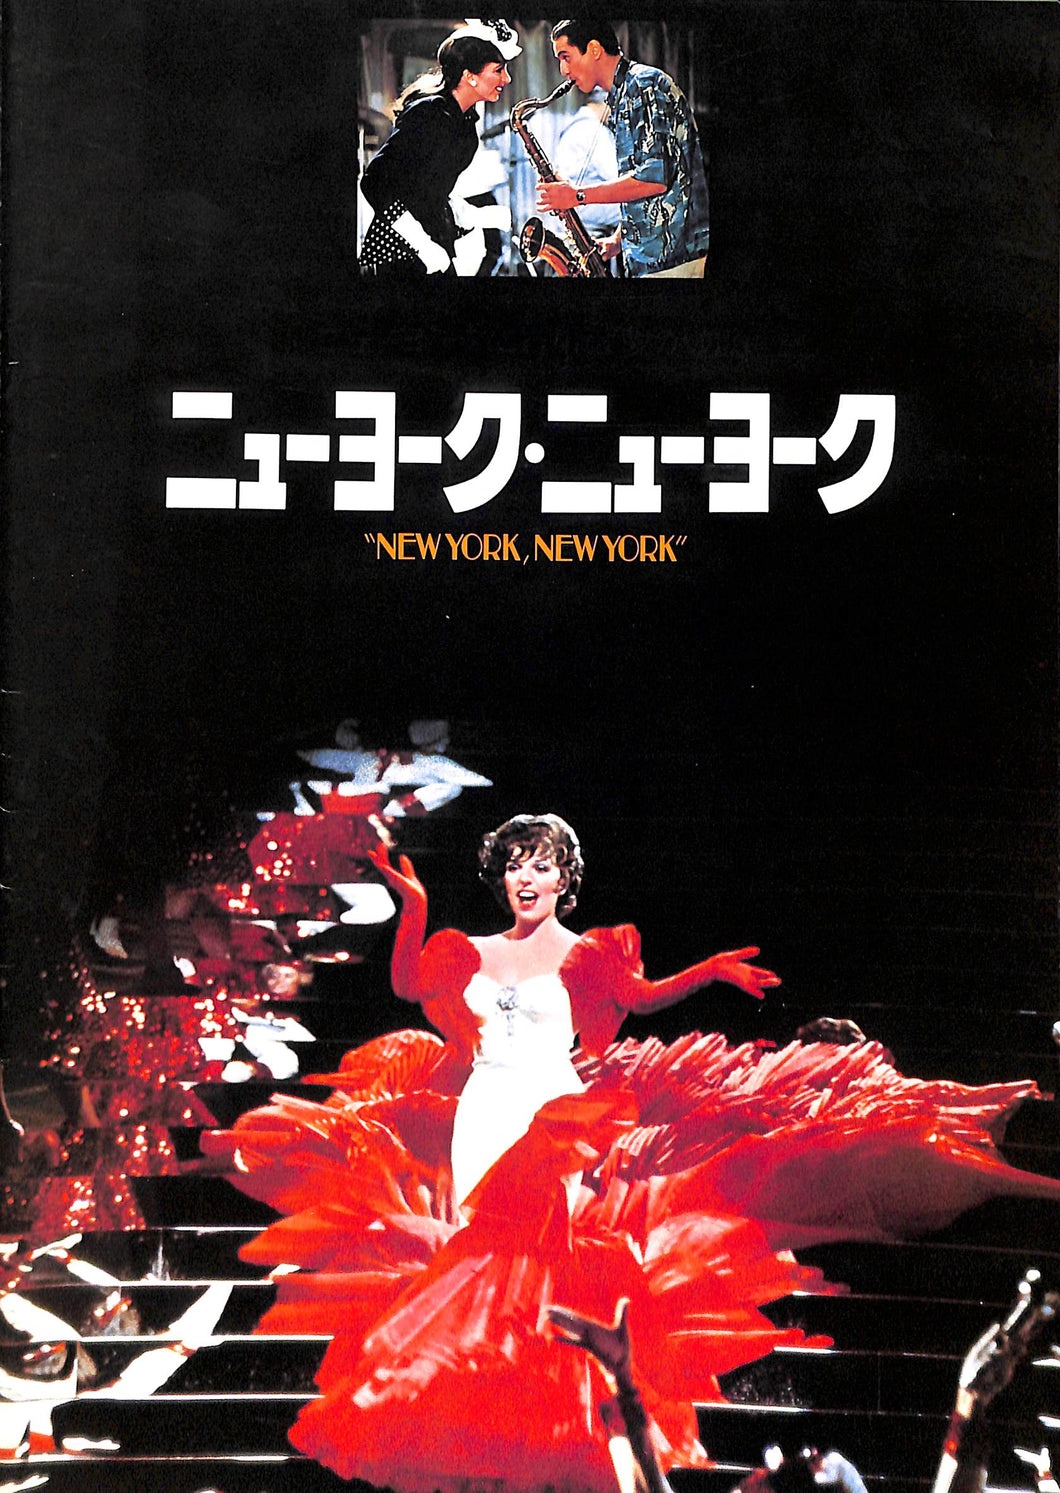 【映画パンフレット】ニューヨーク・ニューヨーク(1977年公開) / 監督:マーティン・スコセッシ 主演:ライザ・ミネリ